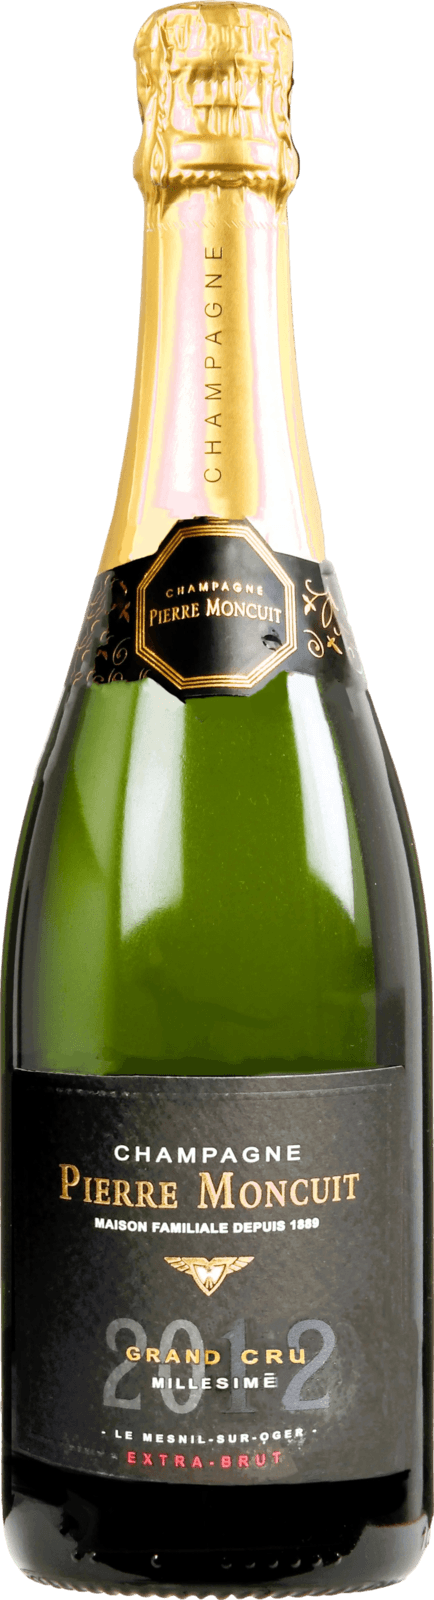 Champagne Pierre Moncuit Grand Cru Extra Brut 2012